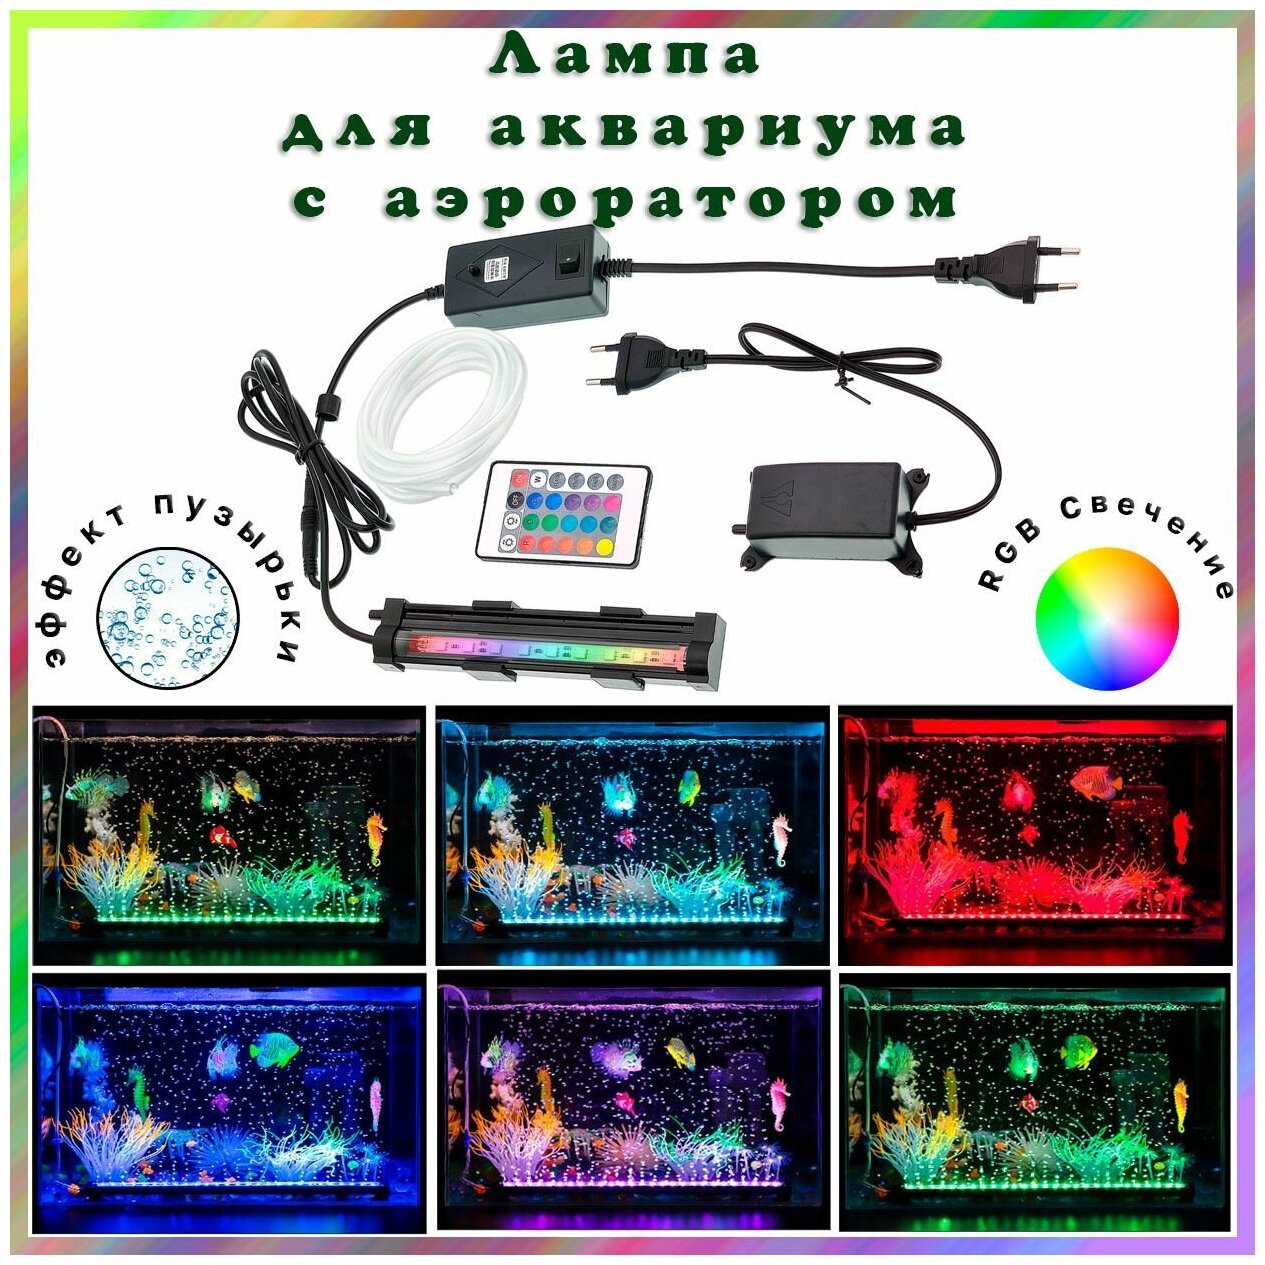 Лампа RGB аквариумная, погружная с кислородным воздушным насосом (аэратор для аквариума), пульт ДУ - фотография № 1